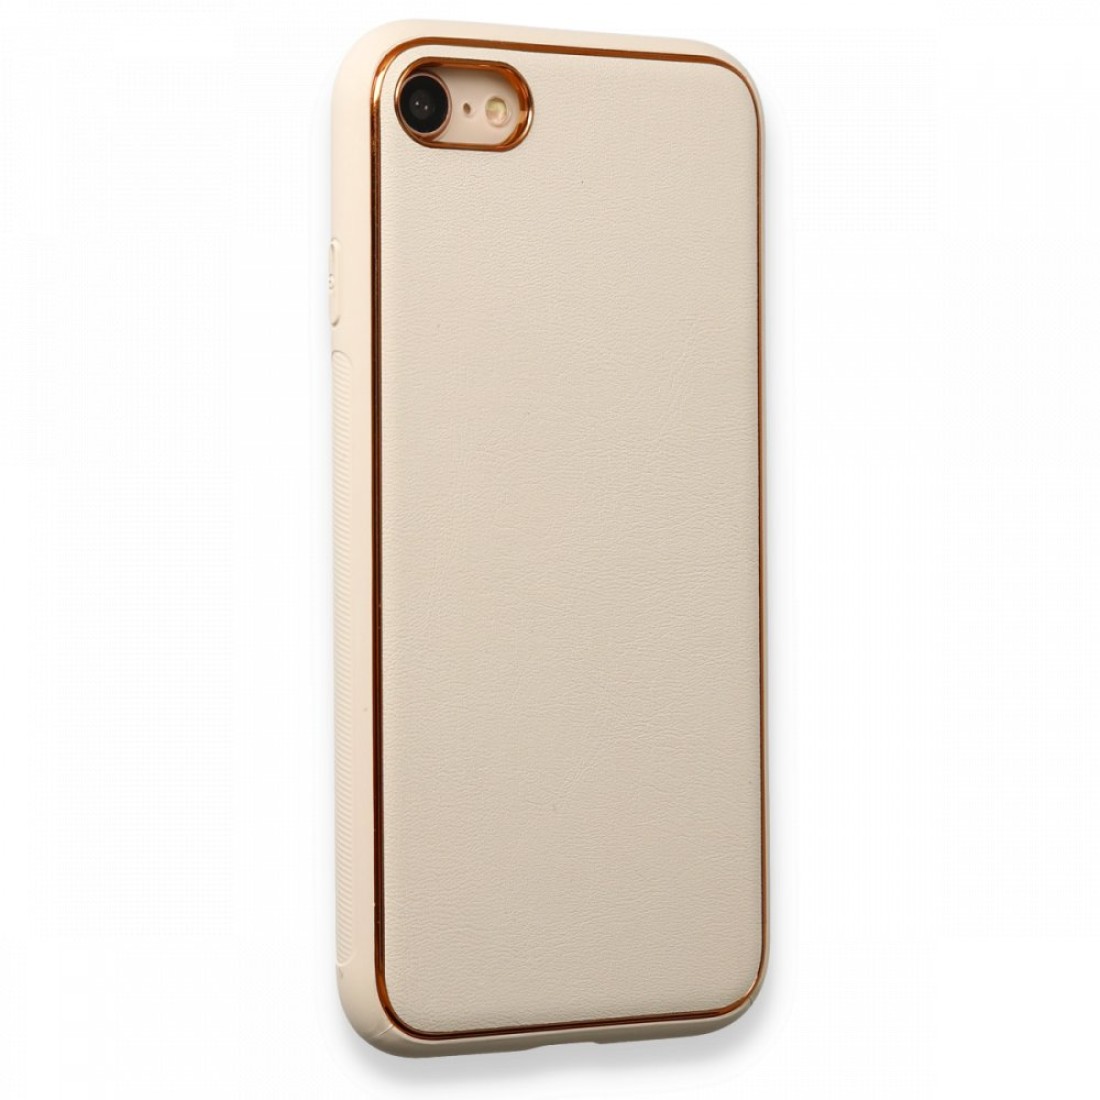 Apple iPhone SE 2020 Kılıf Coco Deri Silikon Kapak - Gold